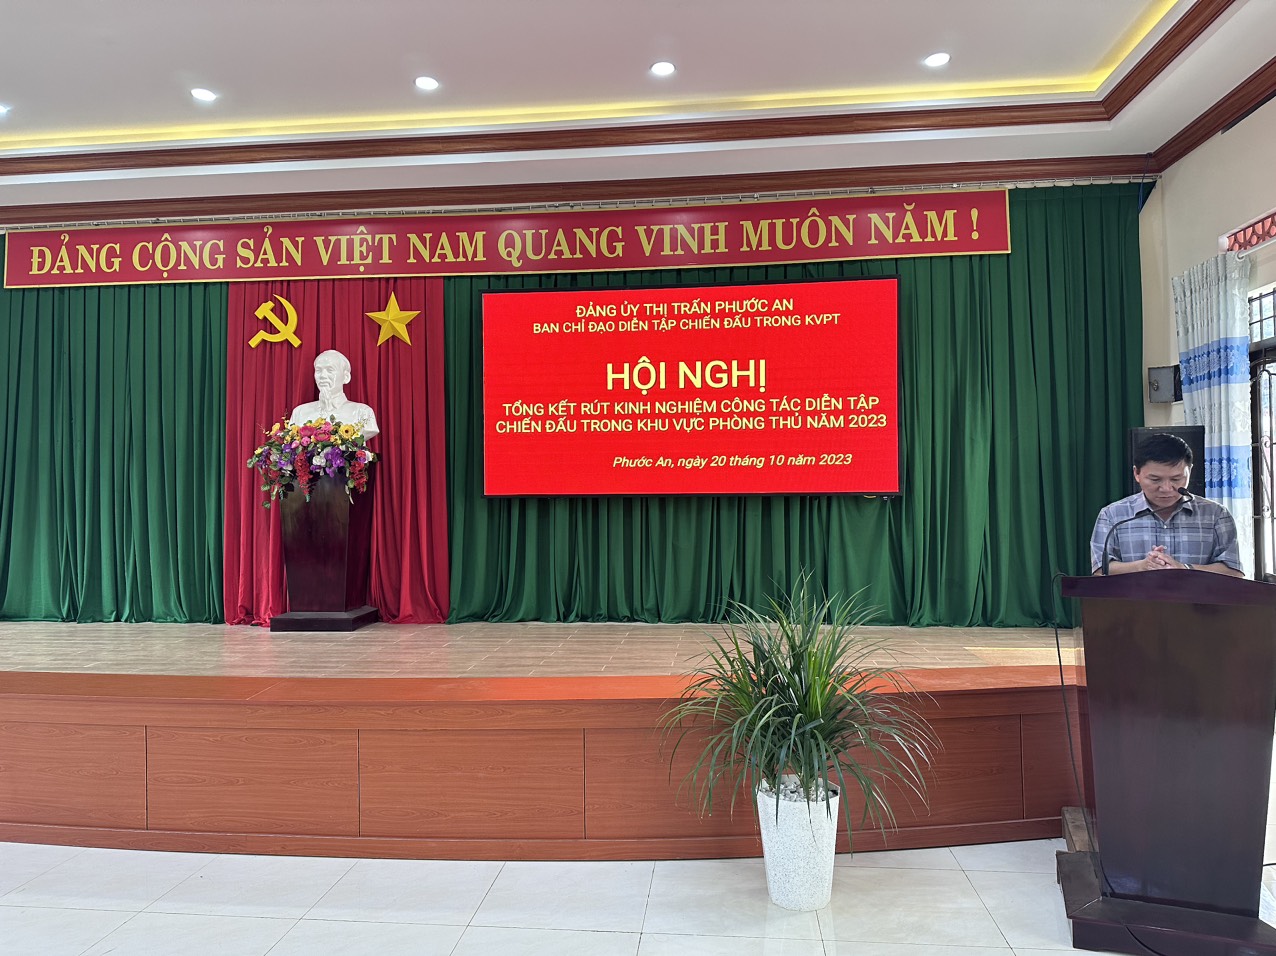 Đảng ủy thị trấn Phước An tổ chức tổng kết rút kinh nghiệm  công tác diễn tập chiến đấu trong khu vực phòng thủ năm 2023.